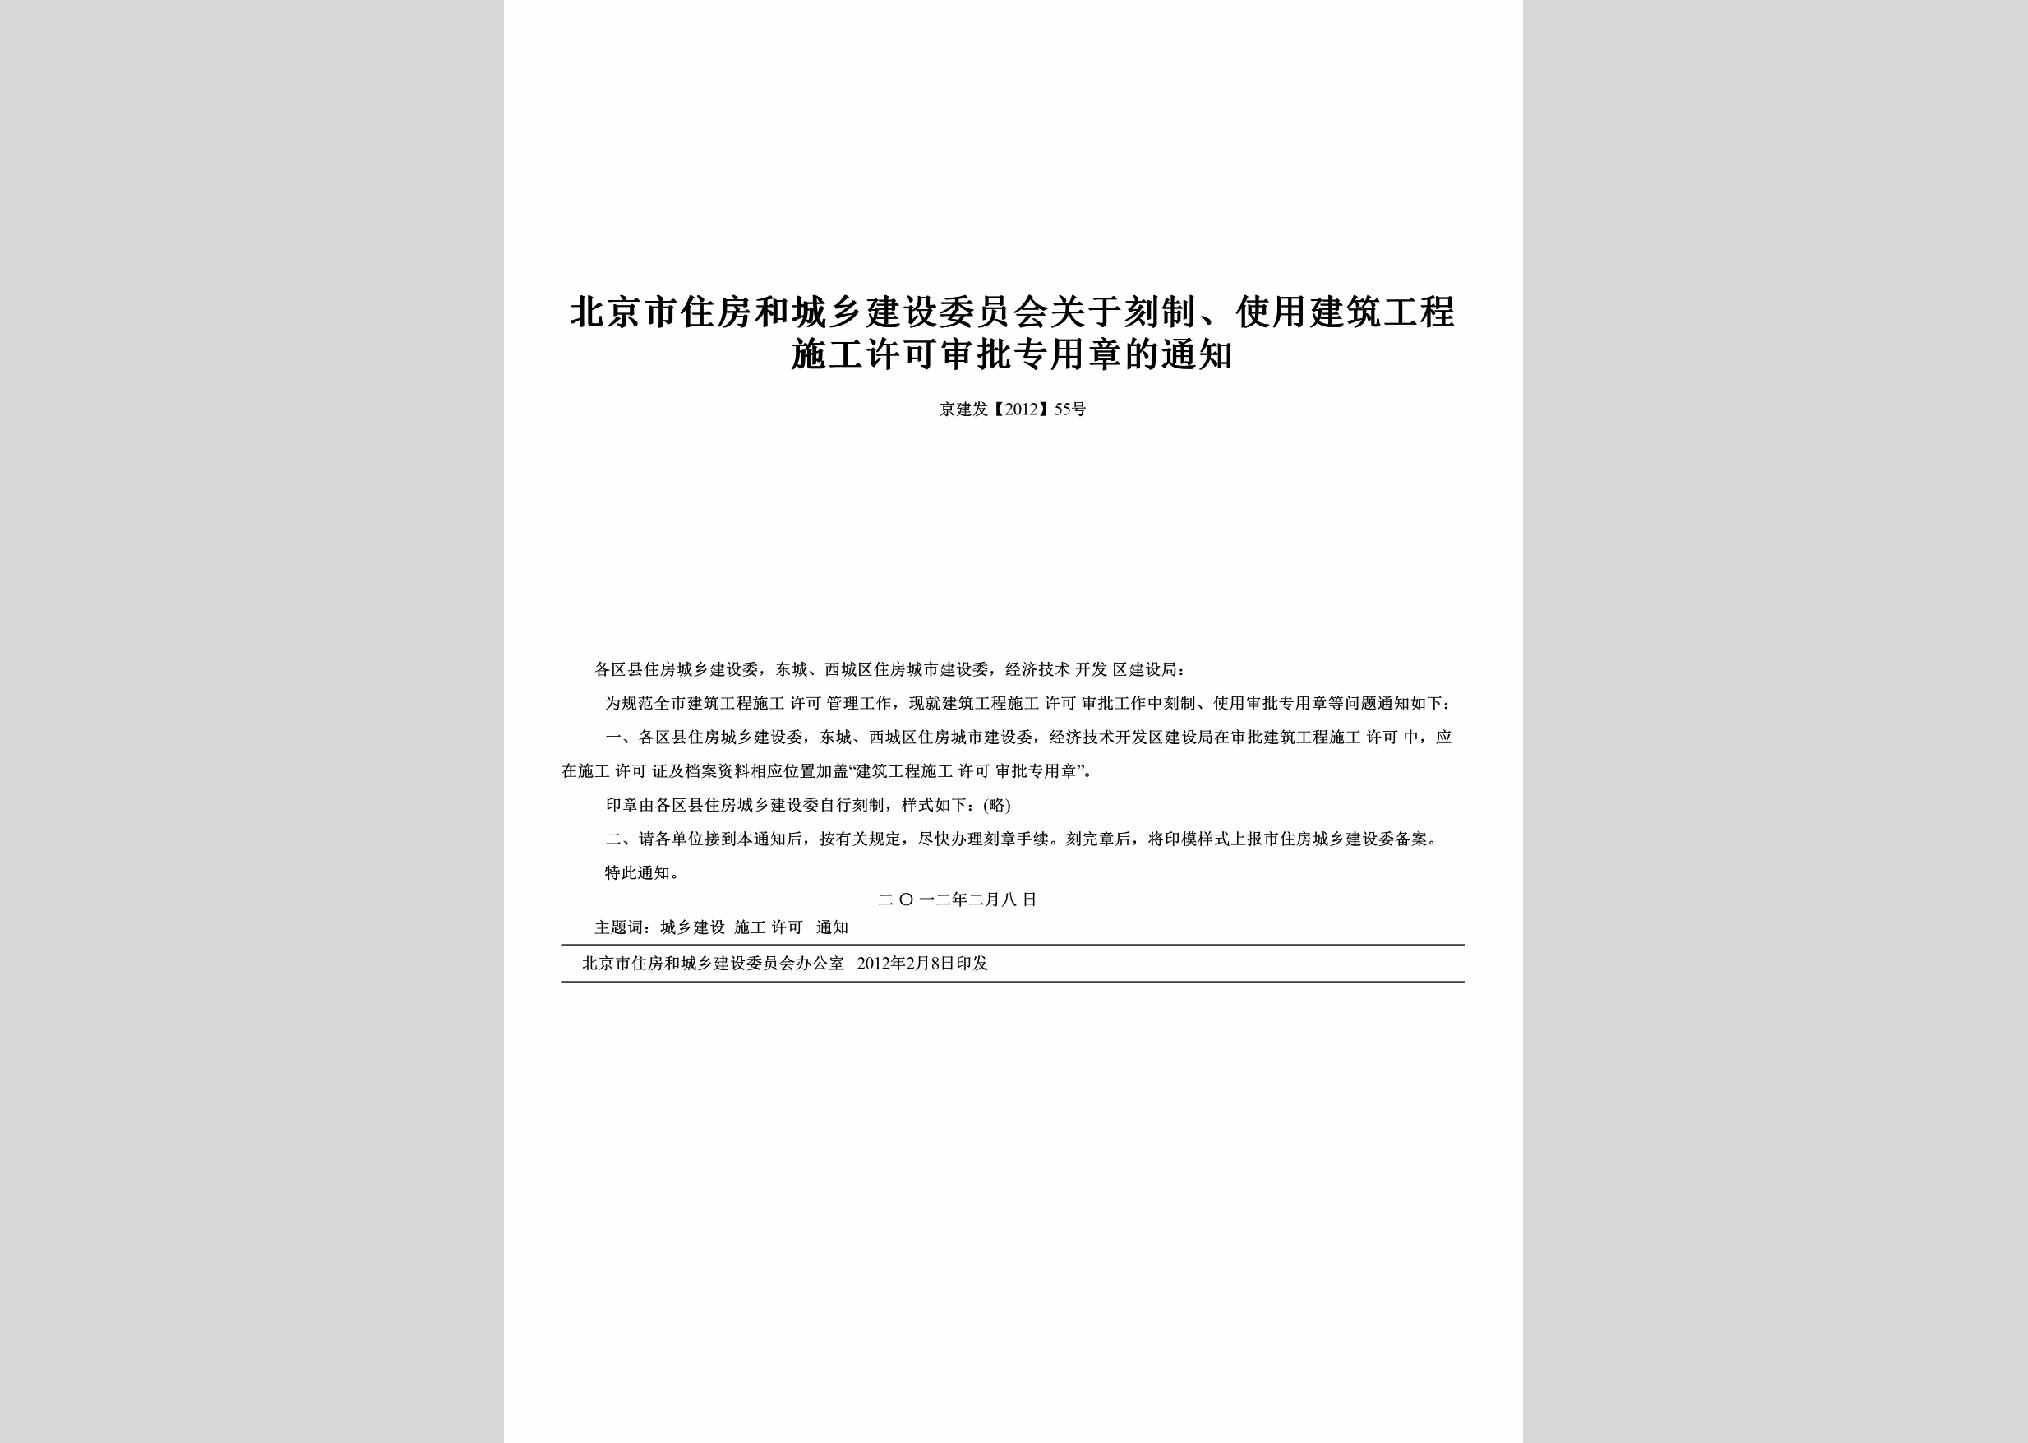 京建发[2012]55号：关于刻制、使用建筑工程施工许可审批专用章的通知